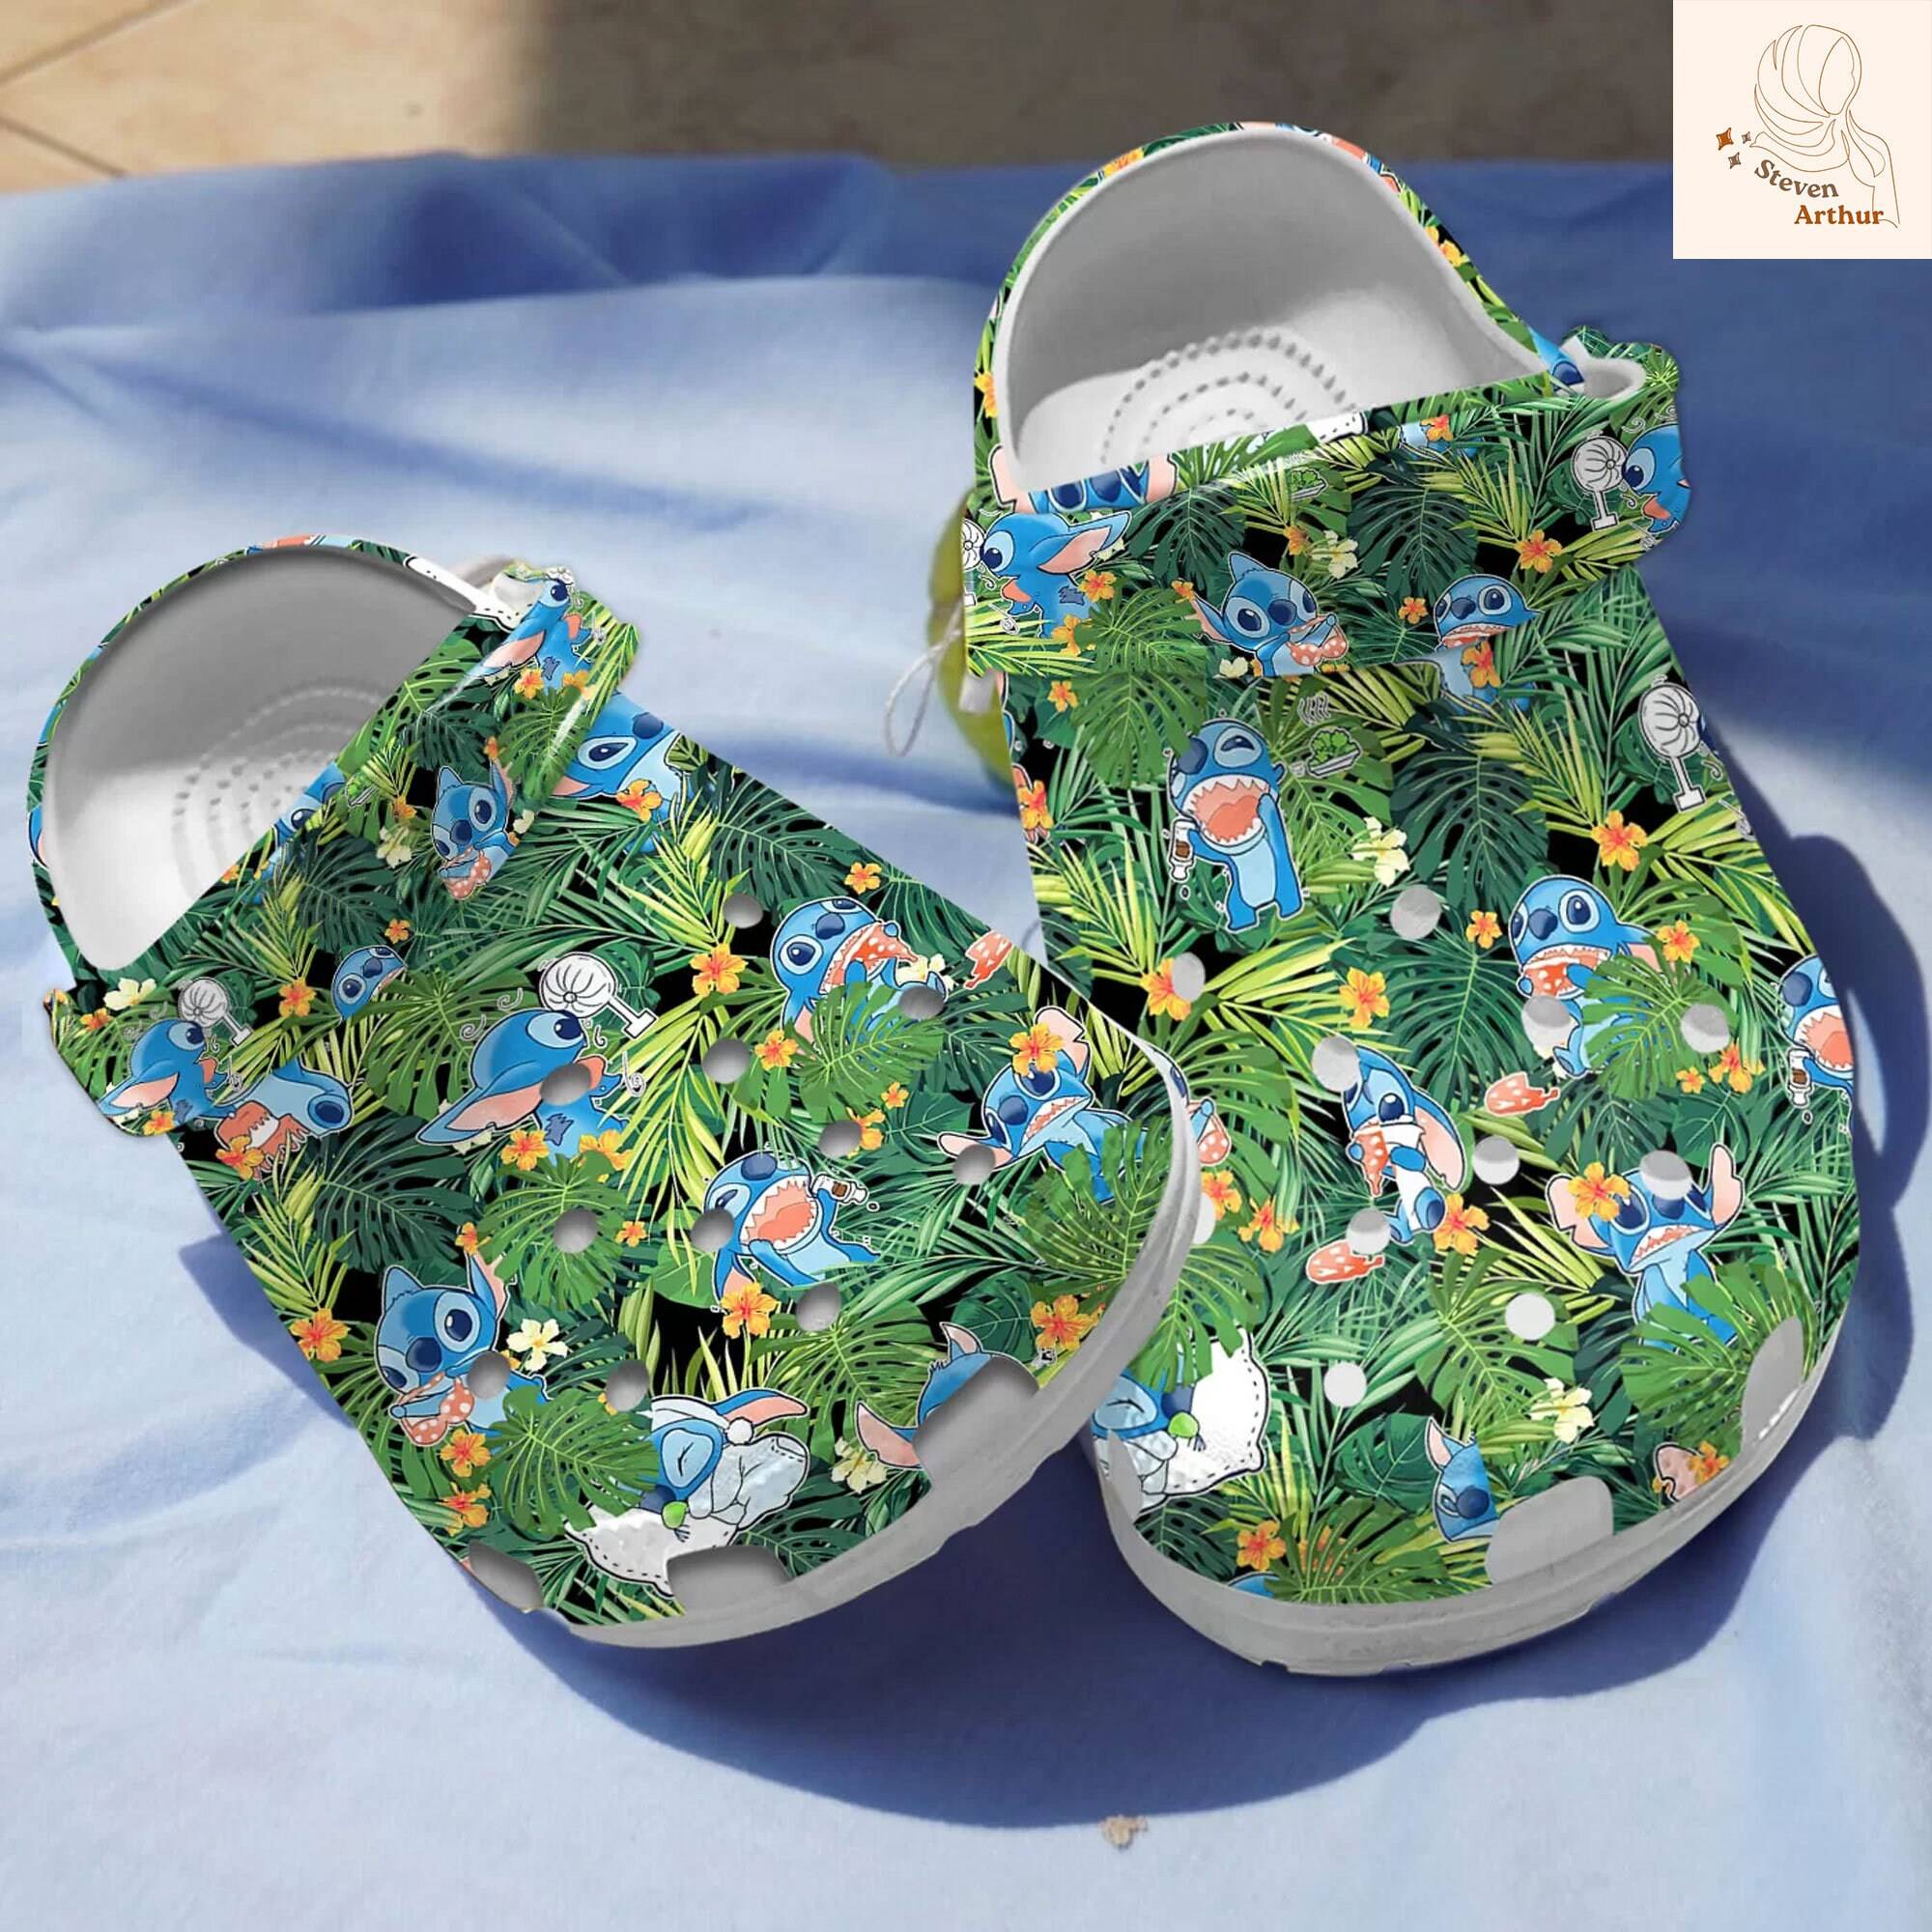 Playful Stitch Disney Clogs Lilo Floral Cartoon Shoes Unique Style